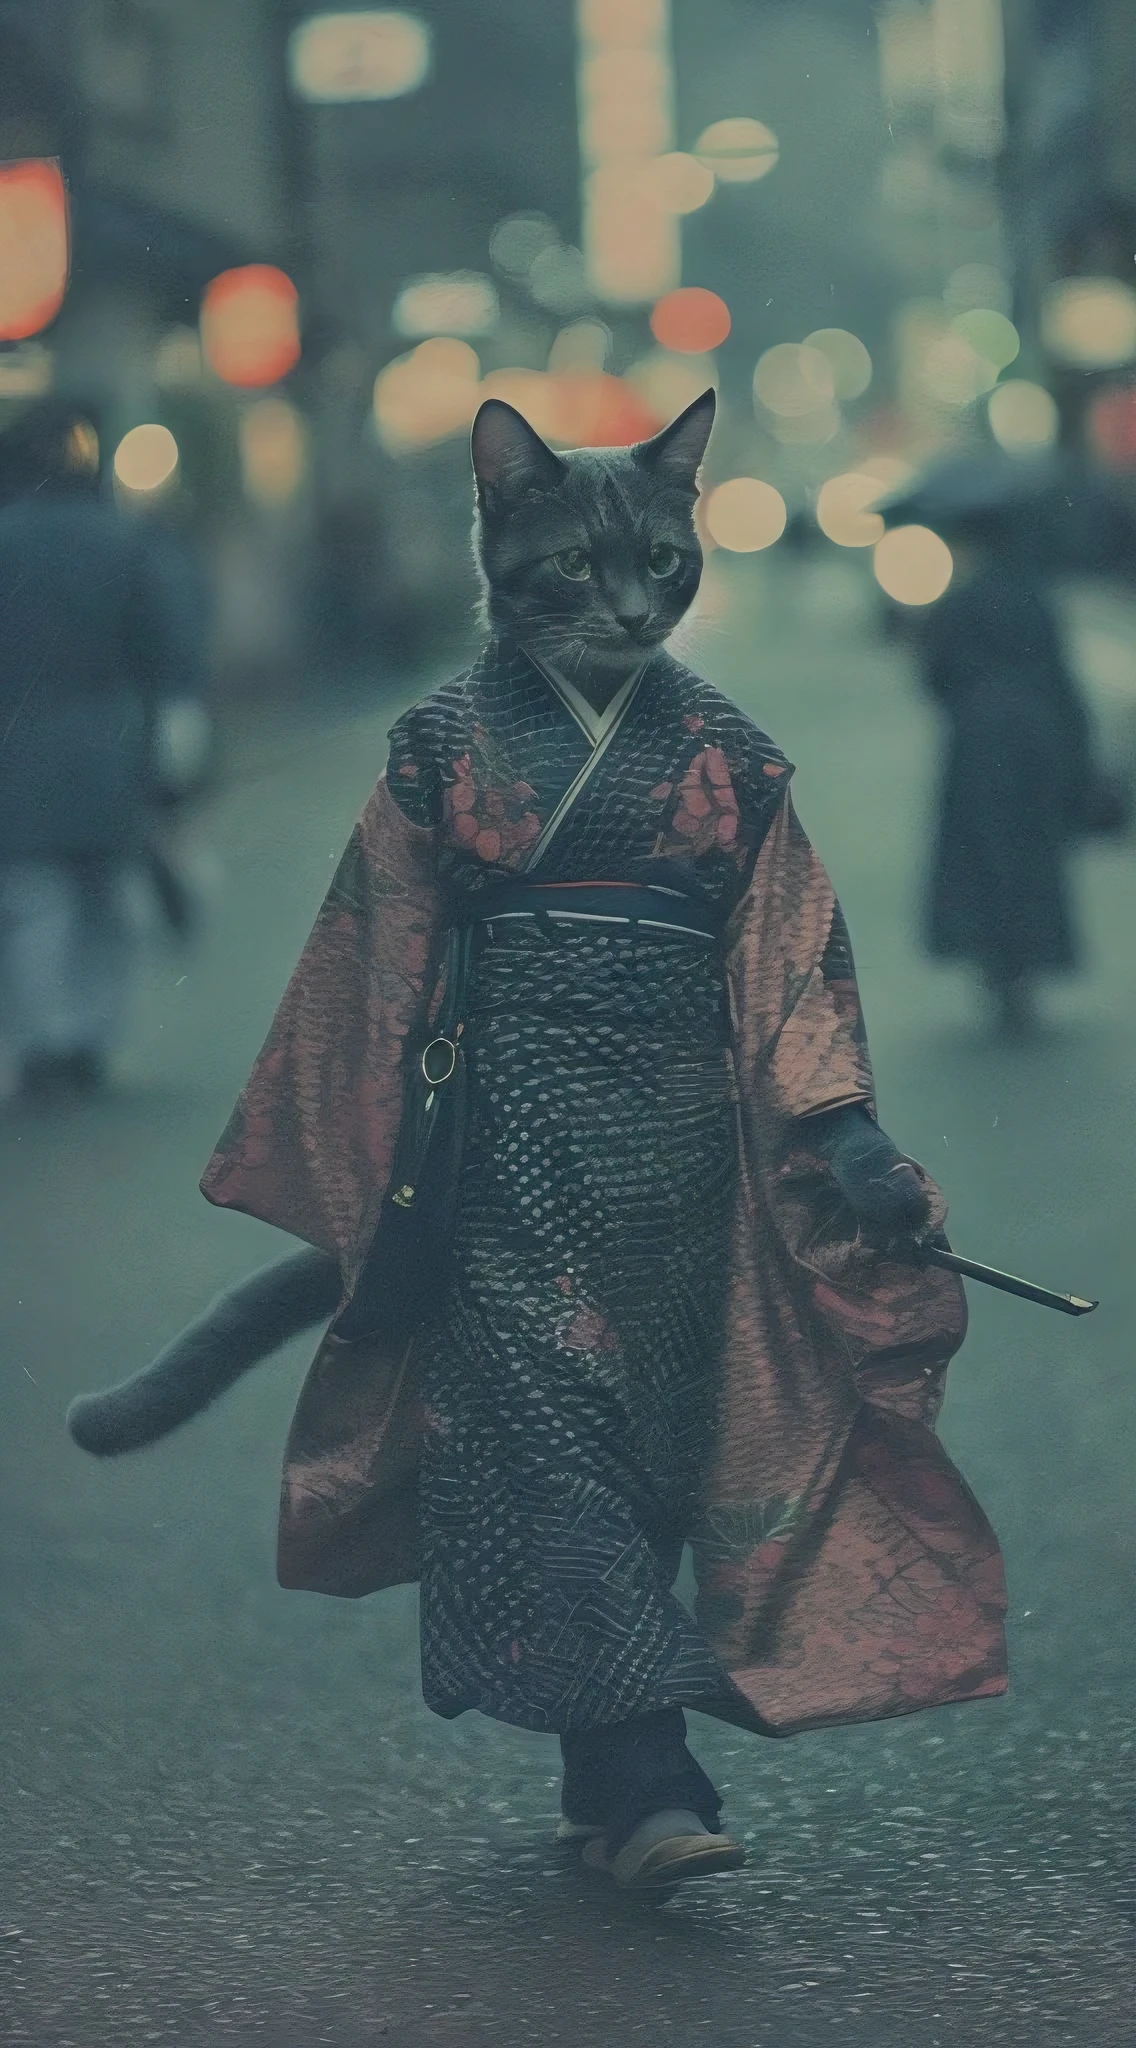 Гуманоидный кот в красивом кимоно, прогулка по улицам Киото, аналоговое фото, сложные детали, кинематографическое освещение, приглушенная цветовая палитра, зернистость, глубина резкости, высокое качество, шедевр